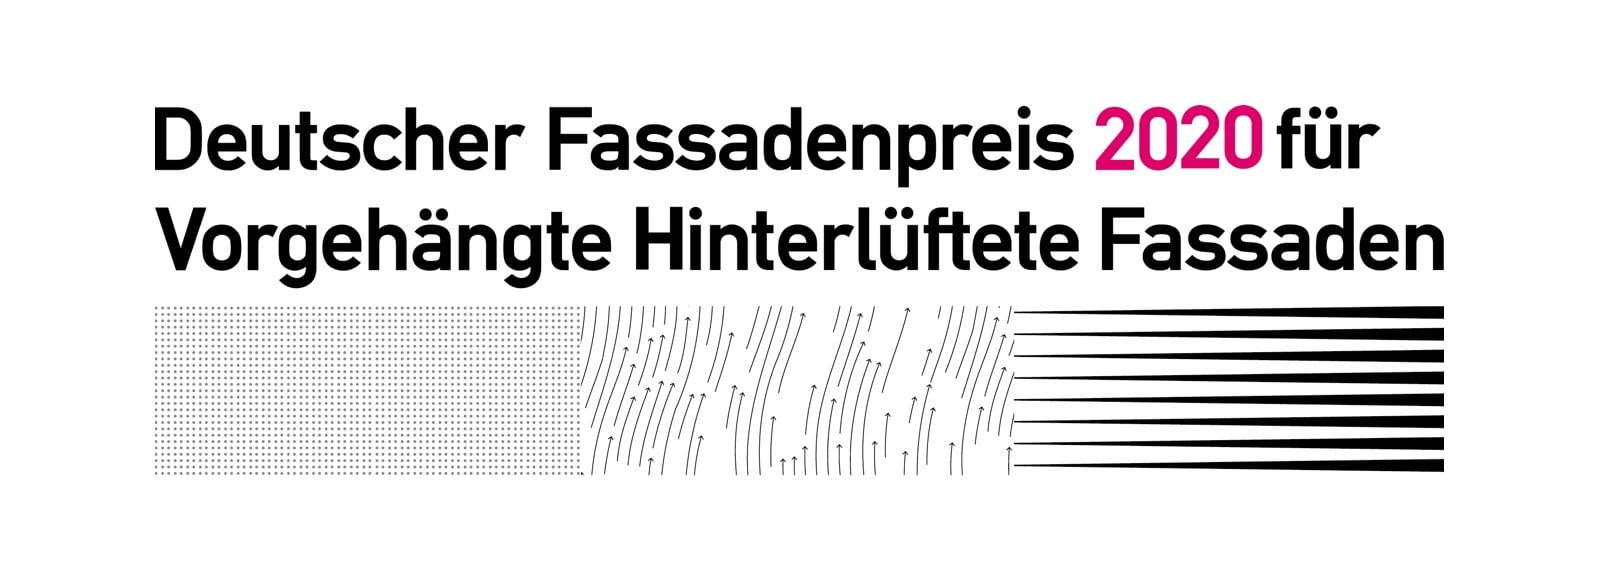 Deutscher Fassadenpreis 2020 für Vorgehängte Hinterlüftete Fassaden (VHF) ausgelobt (Grafik: FVHF)